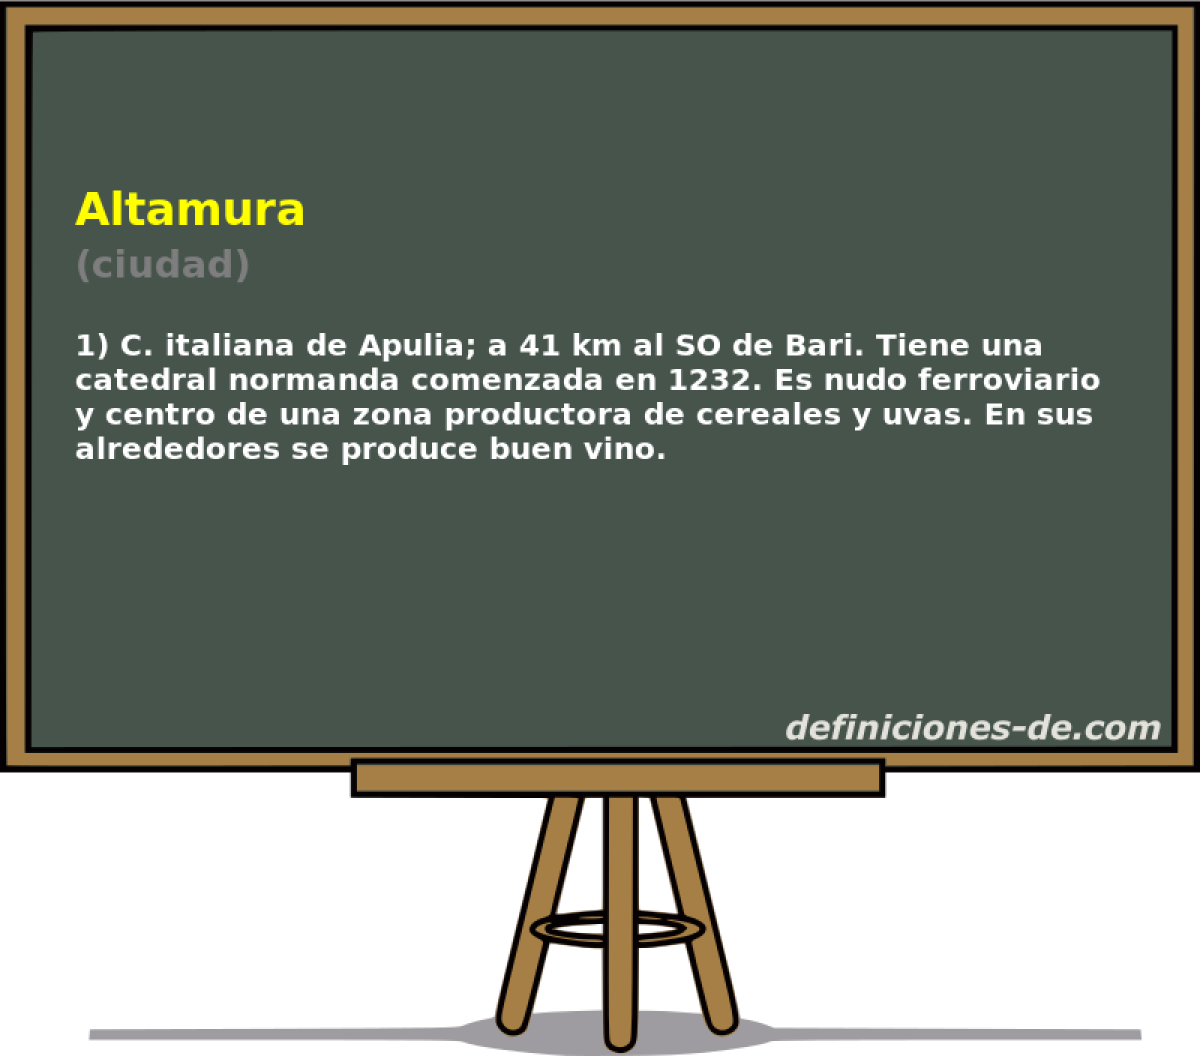 Altamura (ciudad)